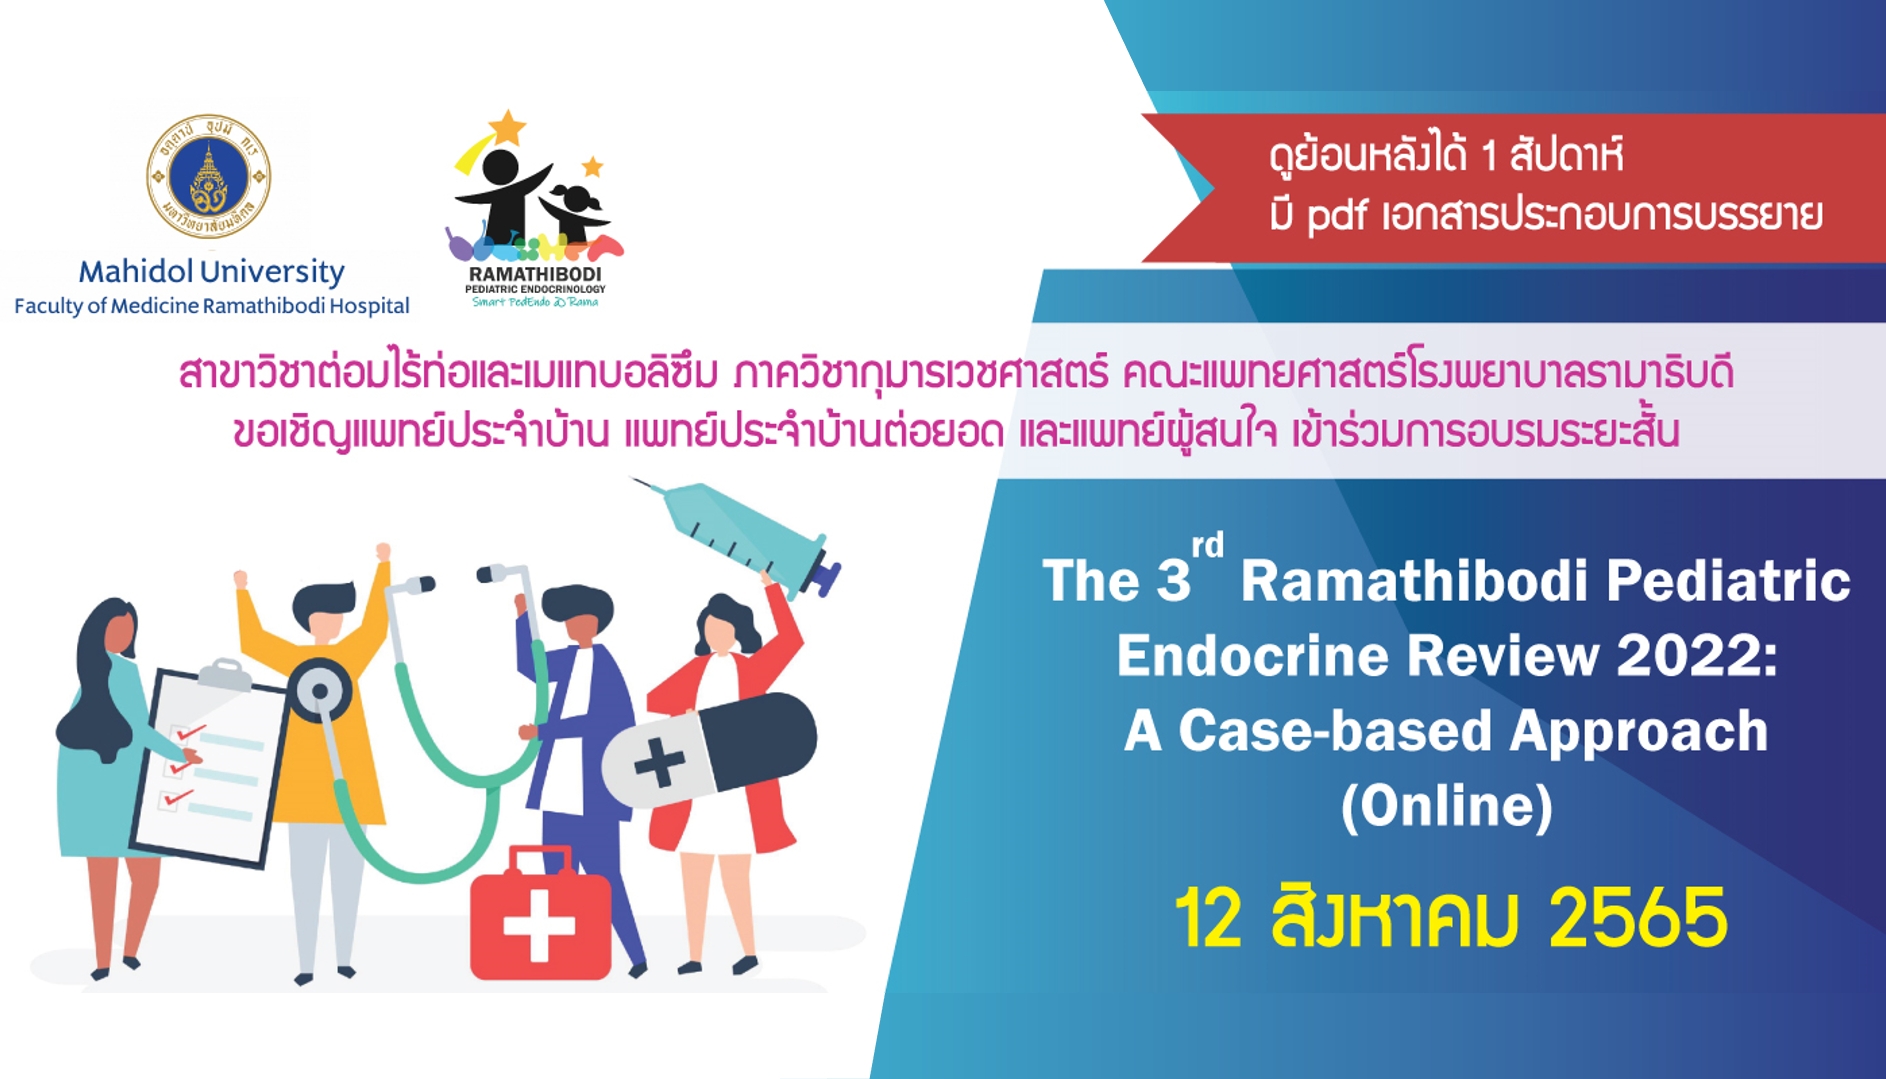 ขอเชิญแพทย์ประจำบ้าน แพทย์ประจำบ้านต่อยอด และแพทย์ผู้สนใจ เข้าร่วมการอบรมระยะสั้น The 3rd Ramathibodi Pediatric Endocrine Review 2022: A Case-Based Approach (Online)